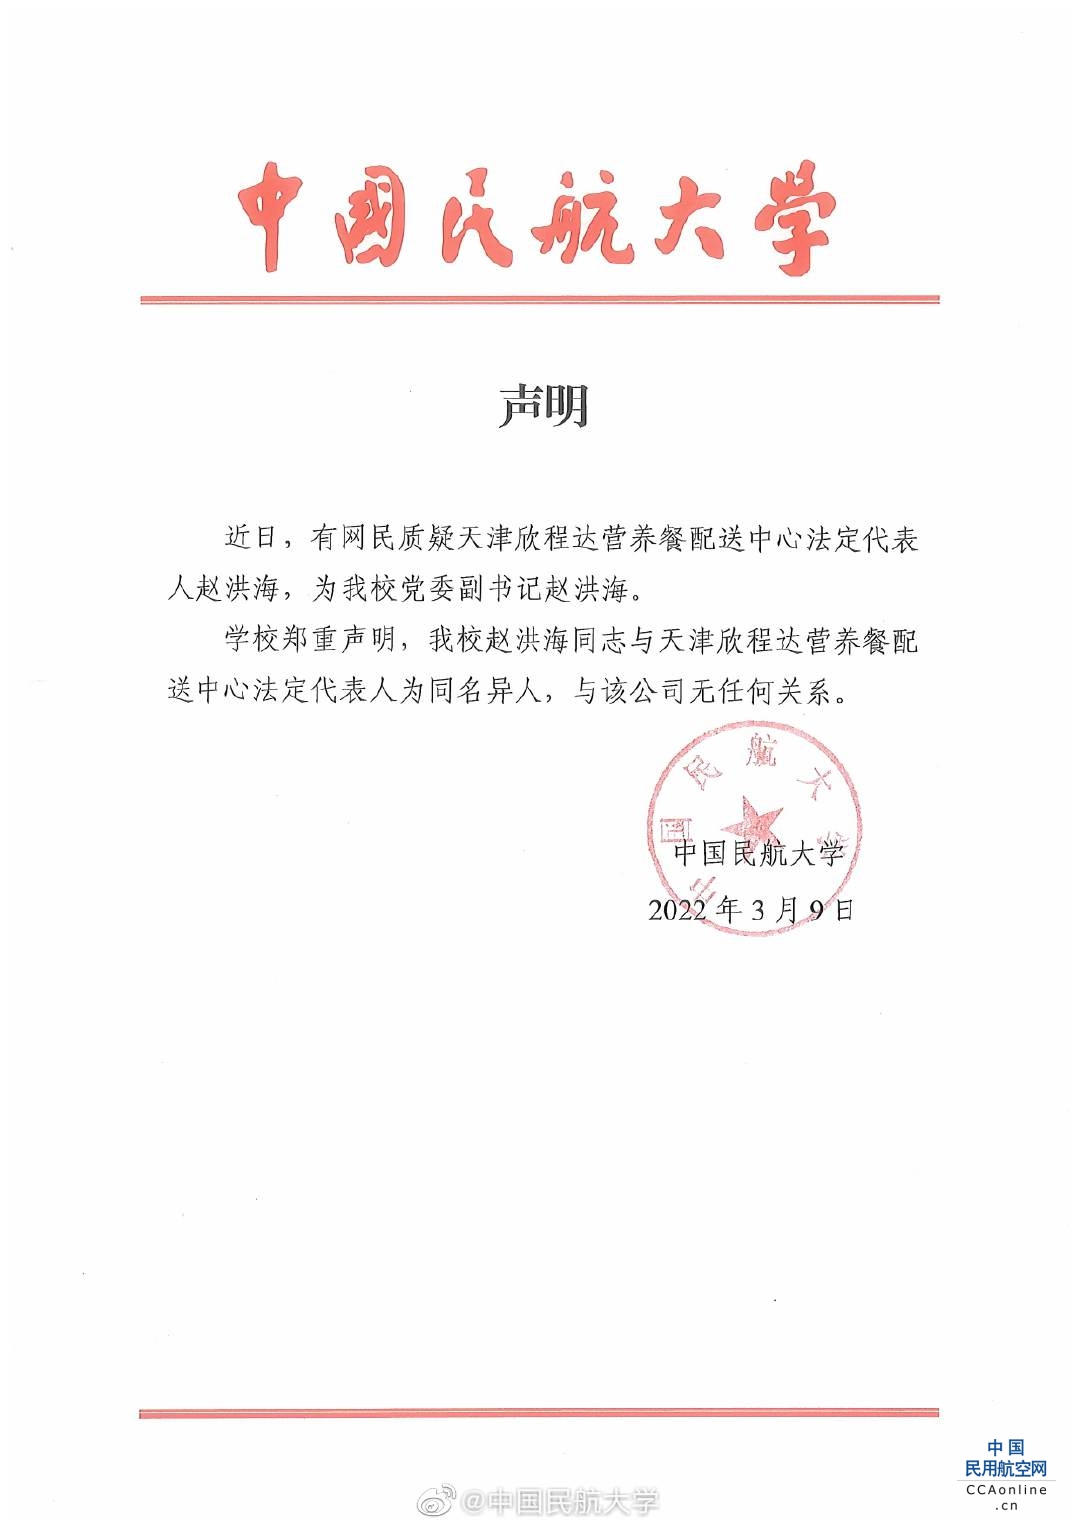 中国民航大学：天津配餐公司赵洪海并非我校人士，为同名异人